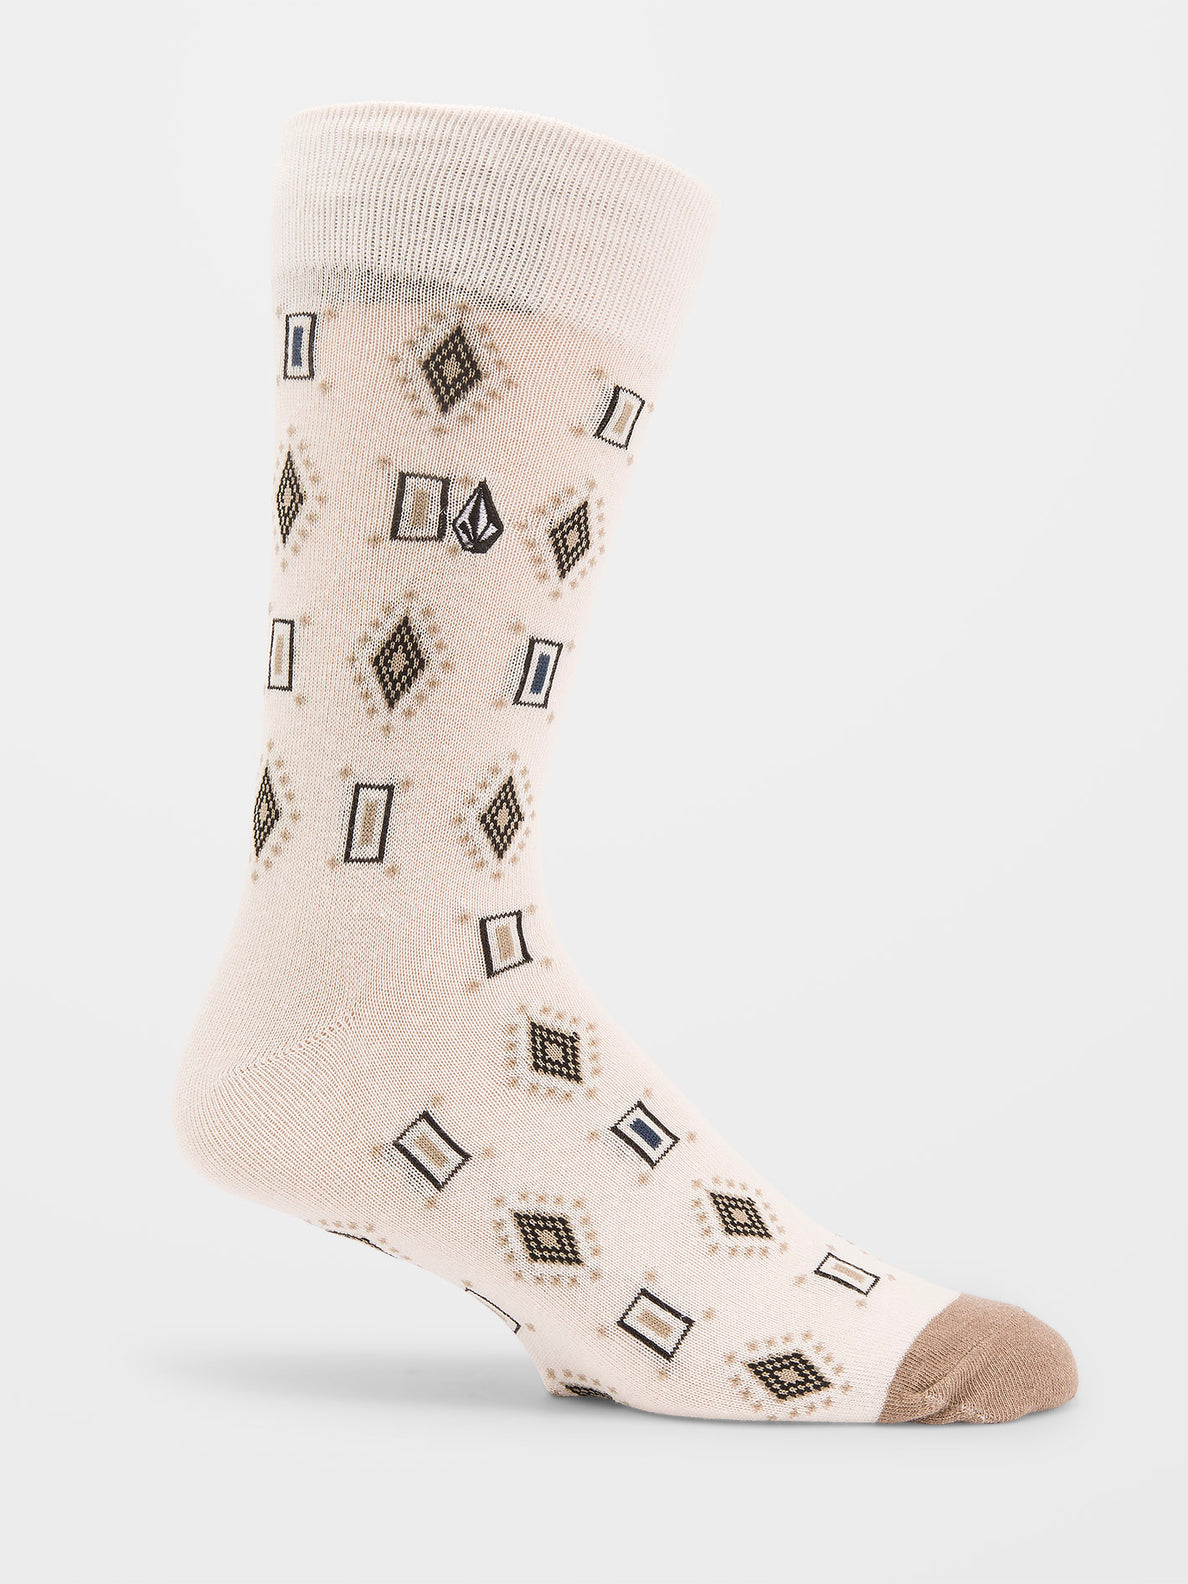 LouisVuitton'-Inspired Socks